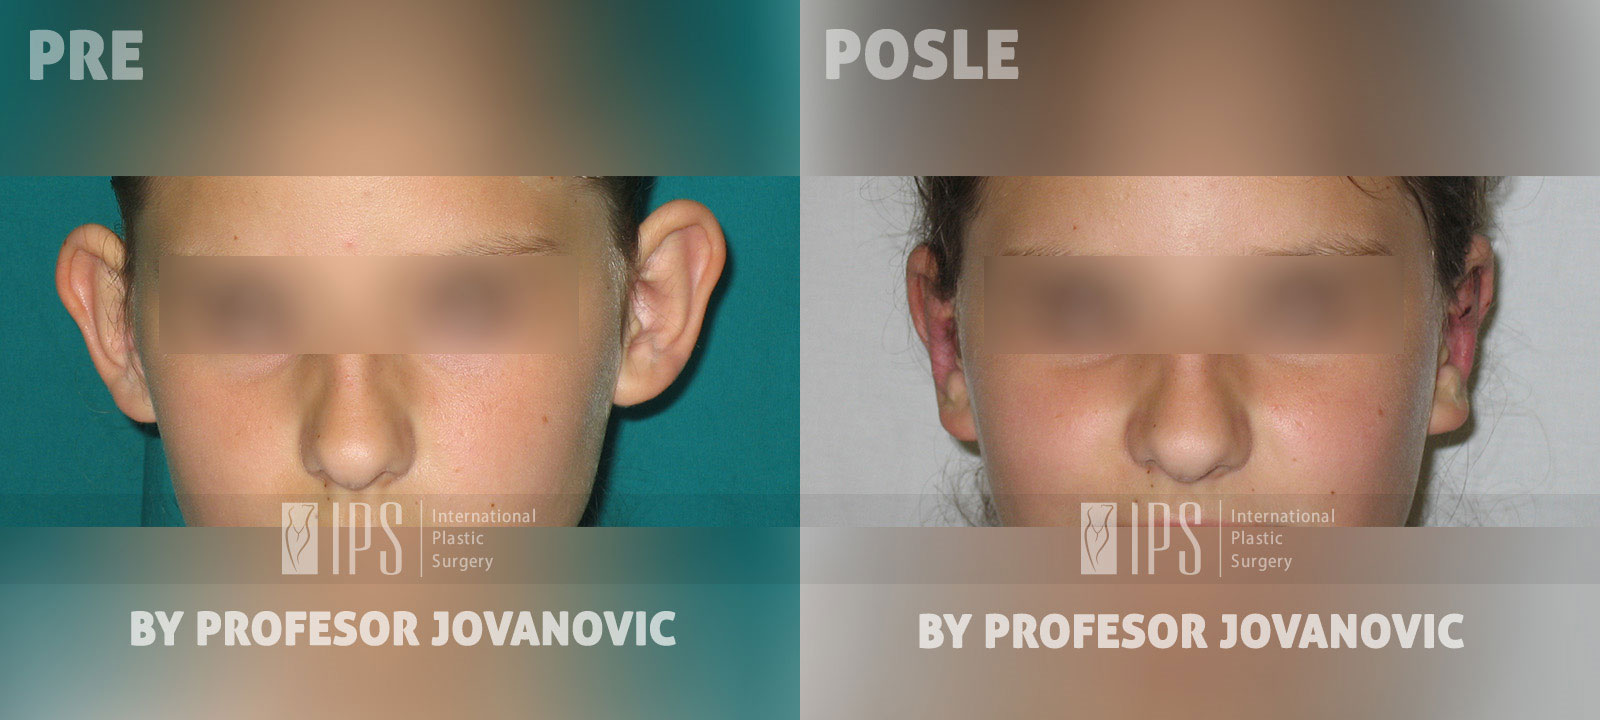 Operacija ušiju - pre i posle